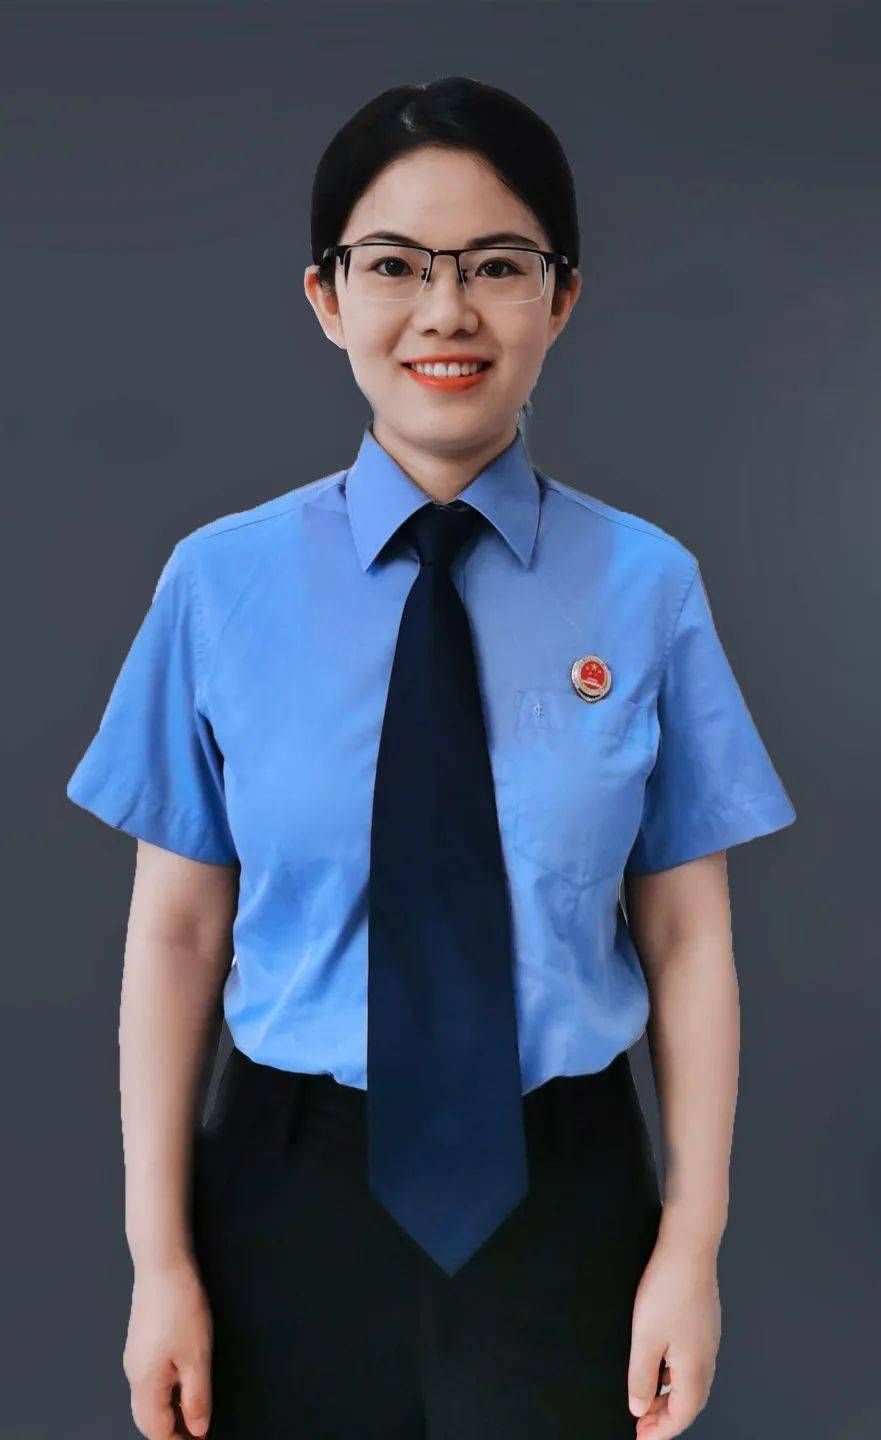 女,1991年出生,中共党员,现为徐州铁路运输检察院环境资源检察部检察